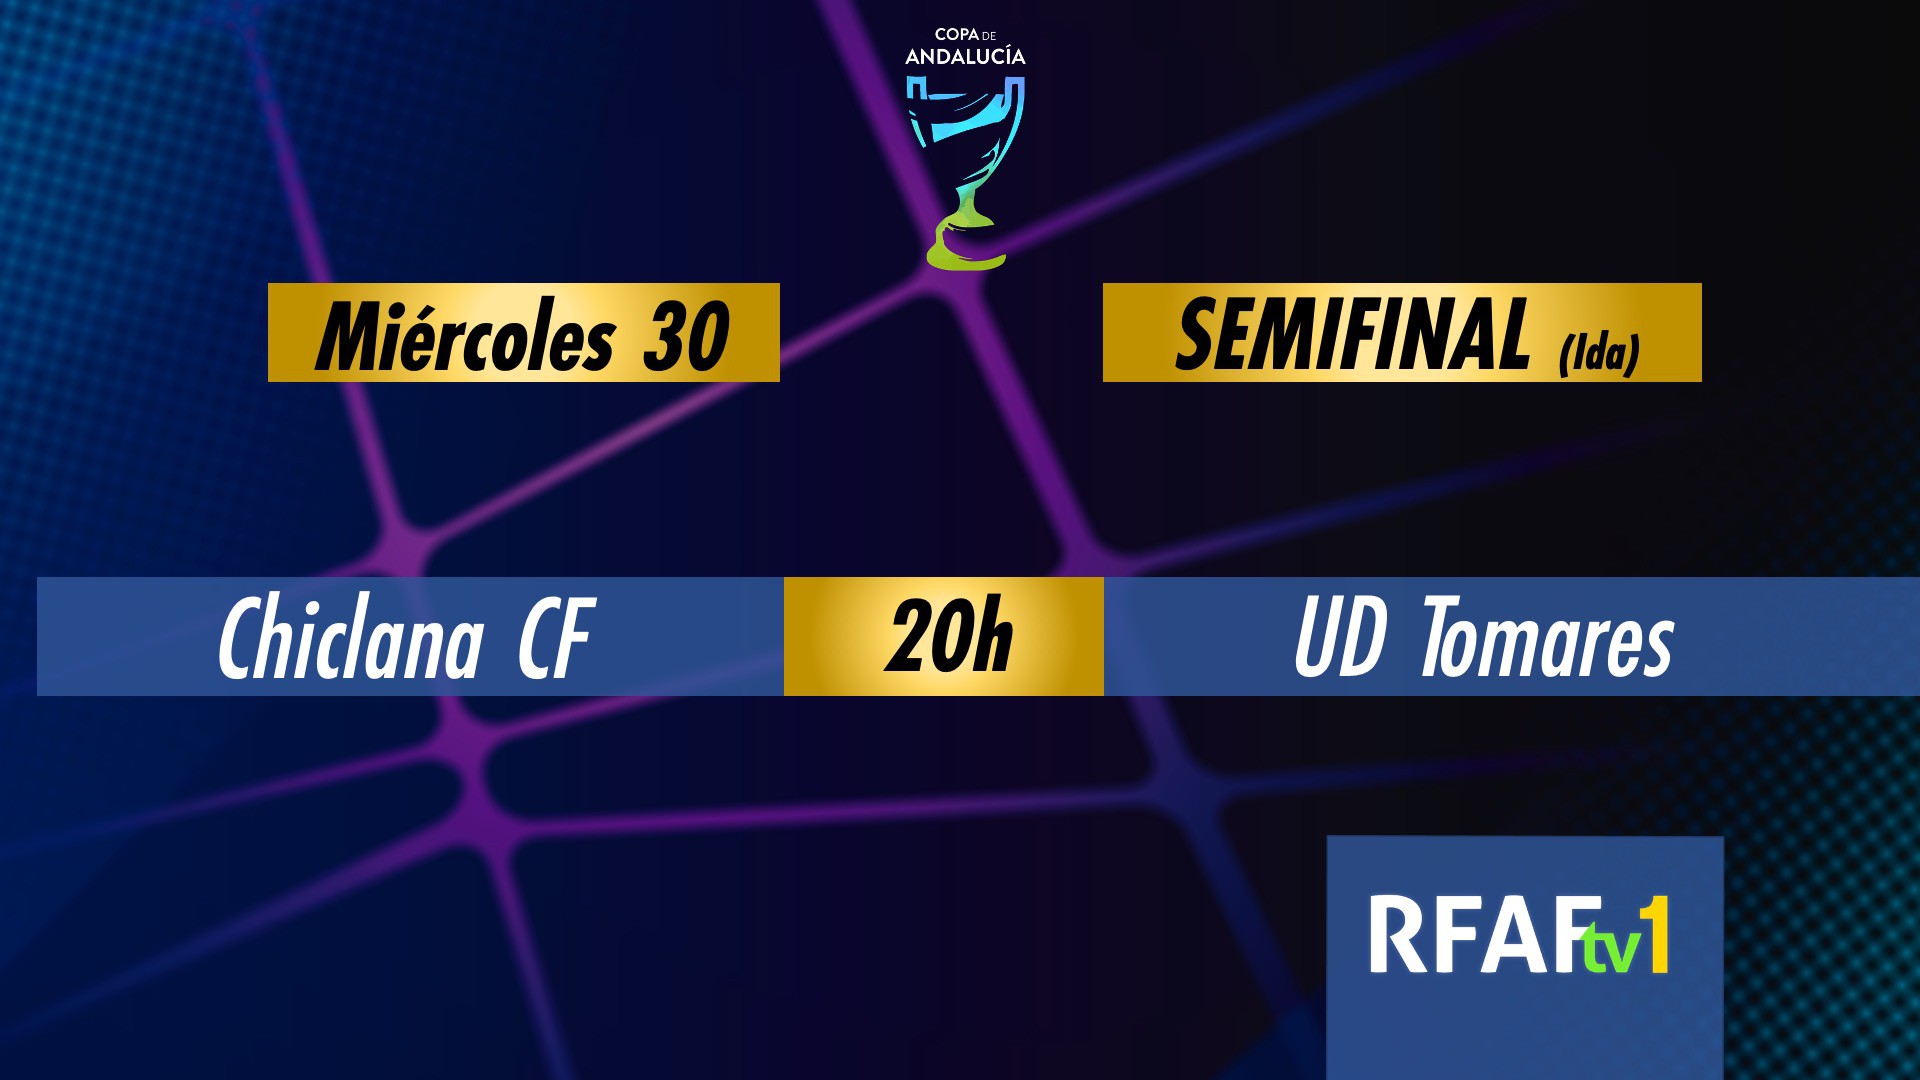 RFAFtv emitirá los partidos de semifinales de Copa de Andalucía